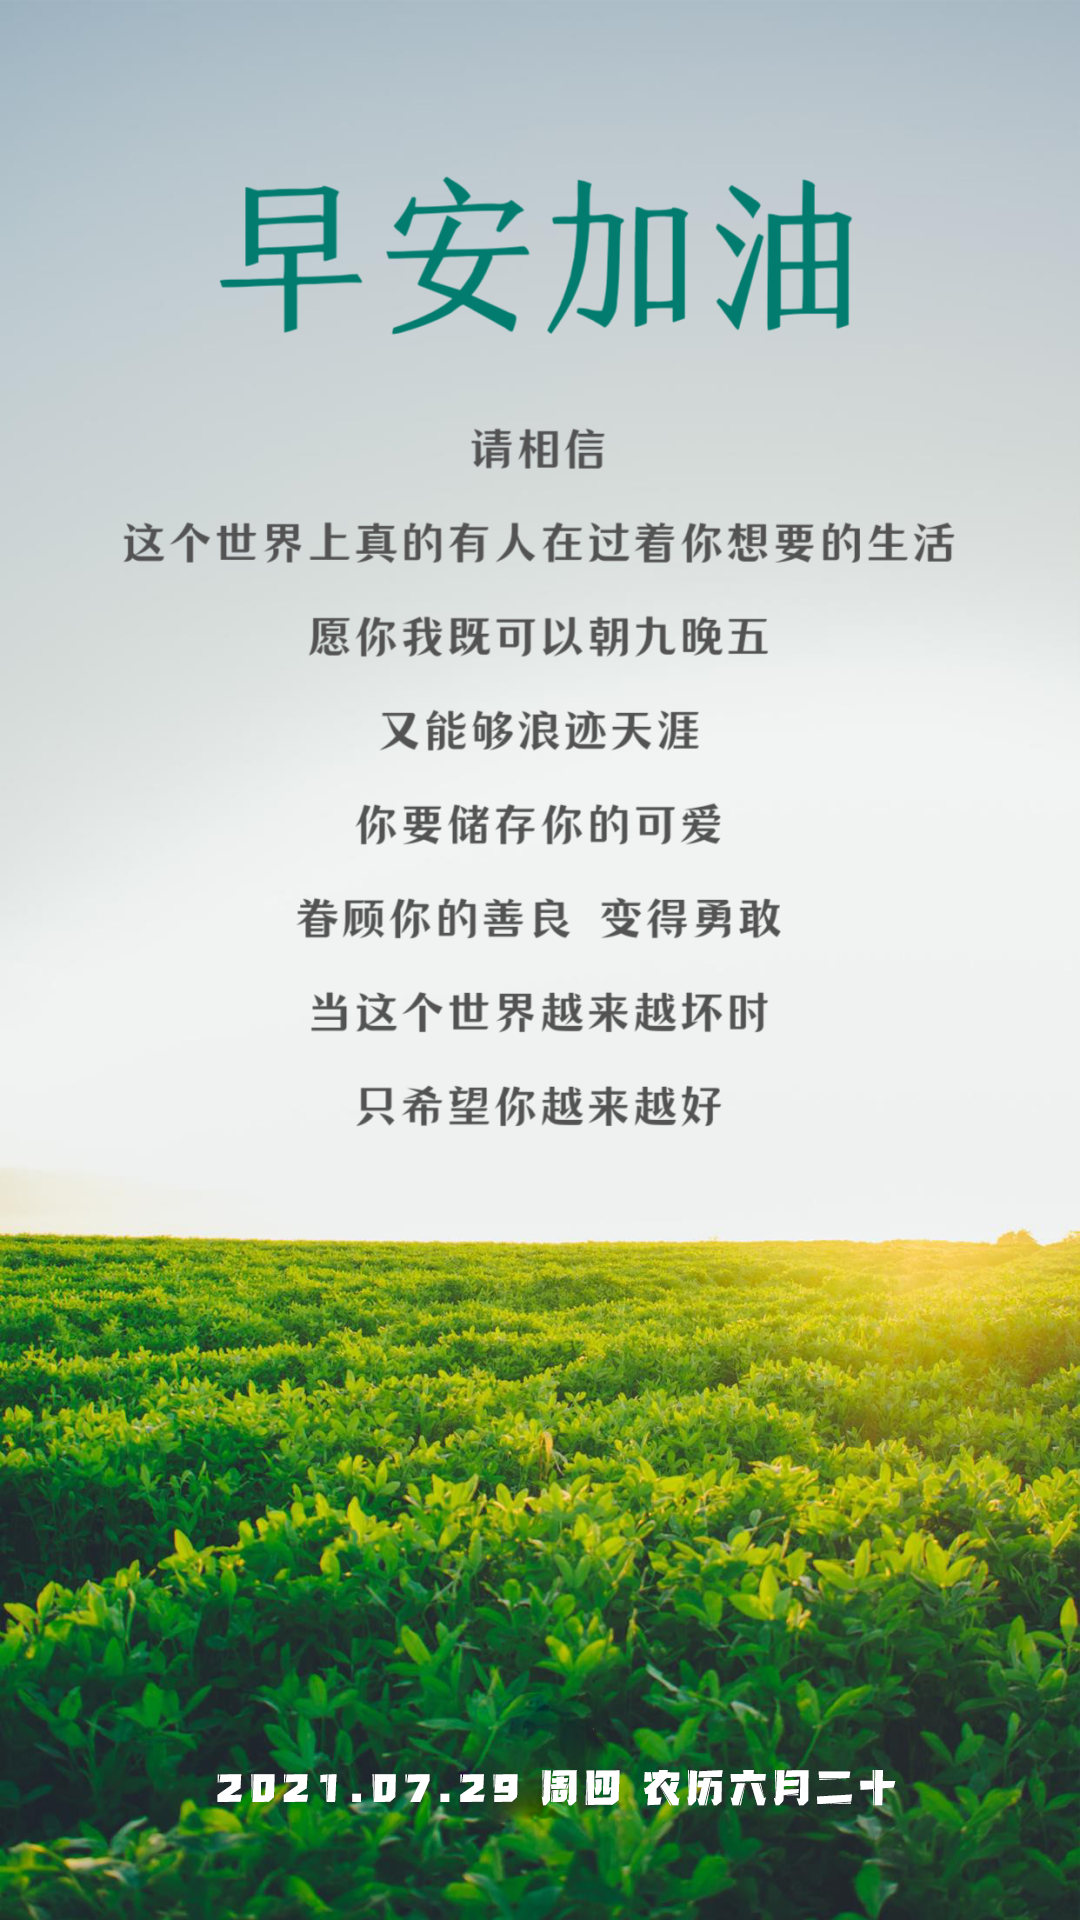 2020武汉加油中国加油励志图片说说 祝福武汉的暖心话语句子 _八宝网